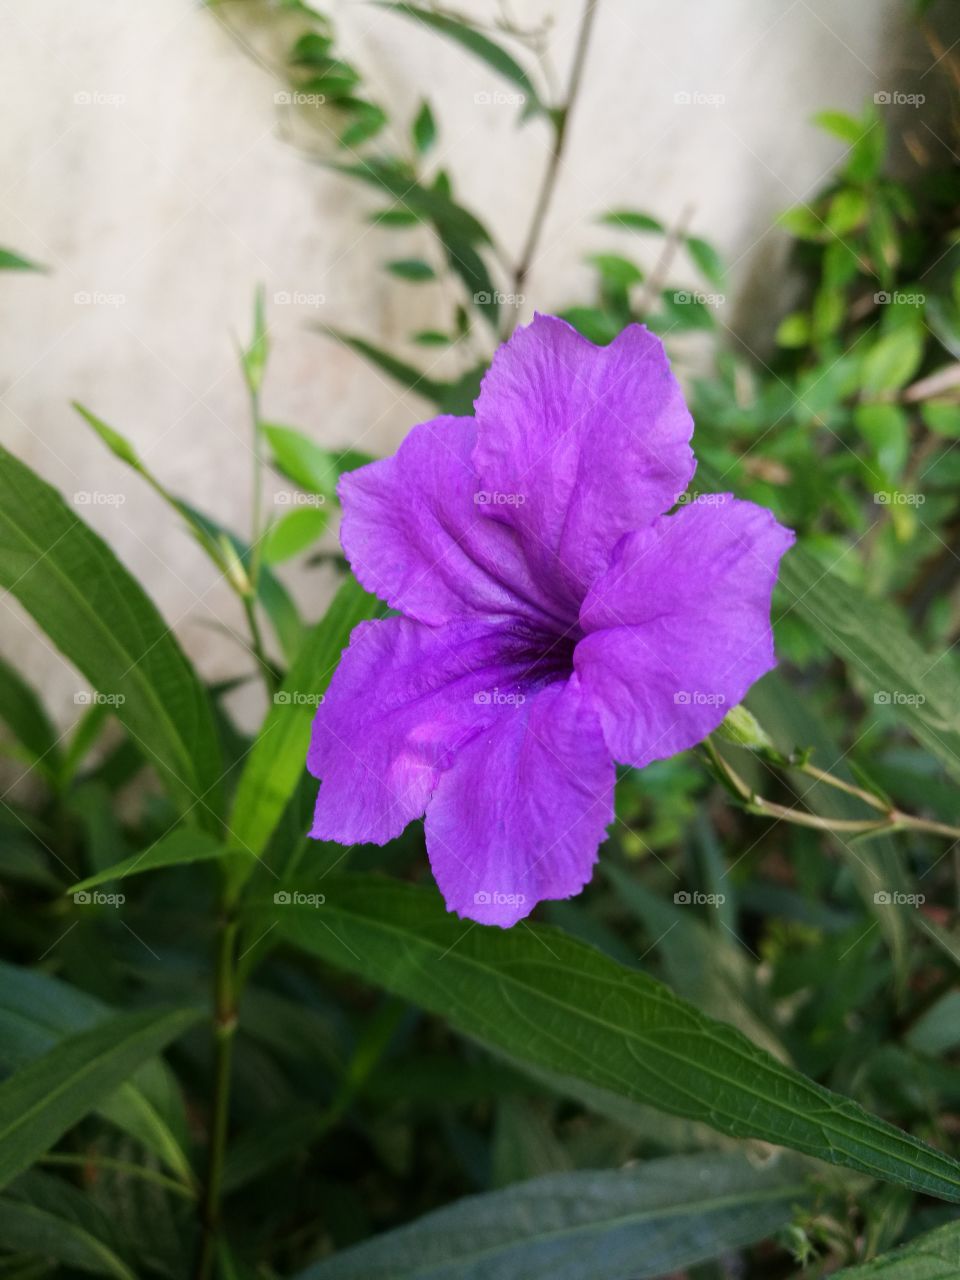 Closeup of purple flower, waterkanon, blooming in garden.